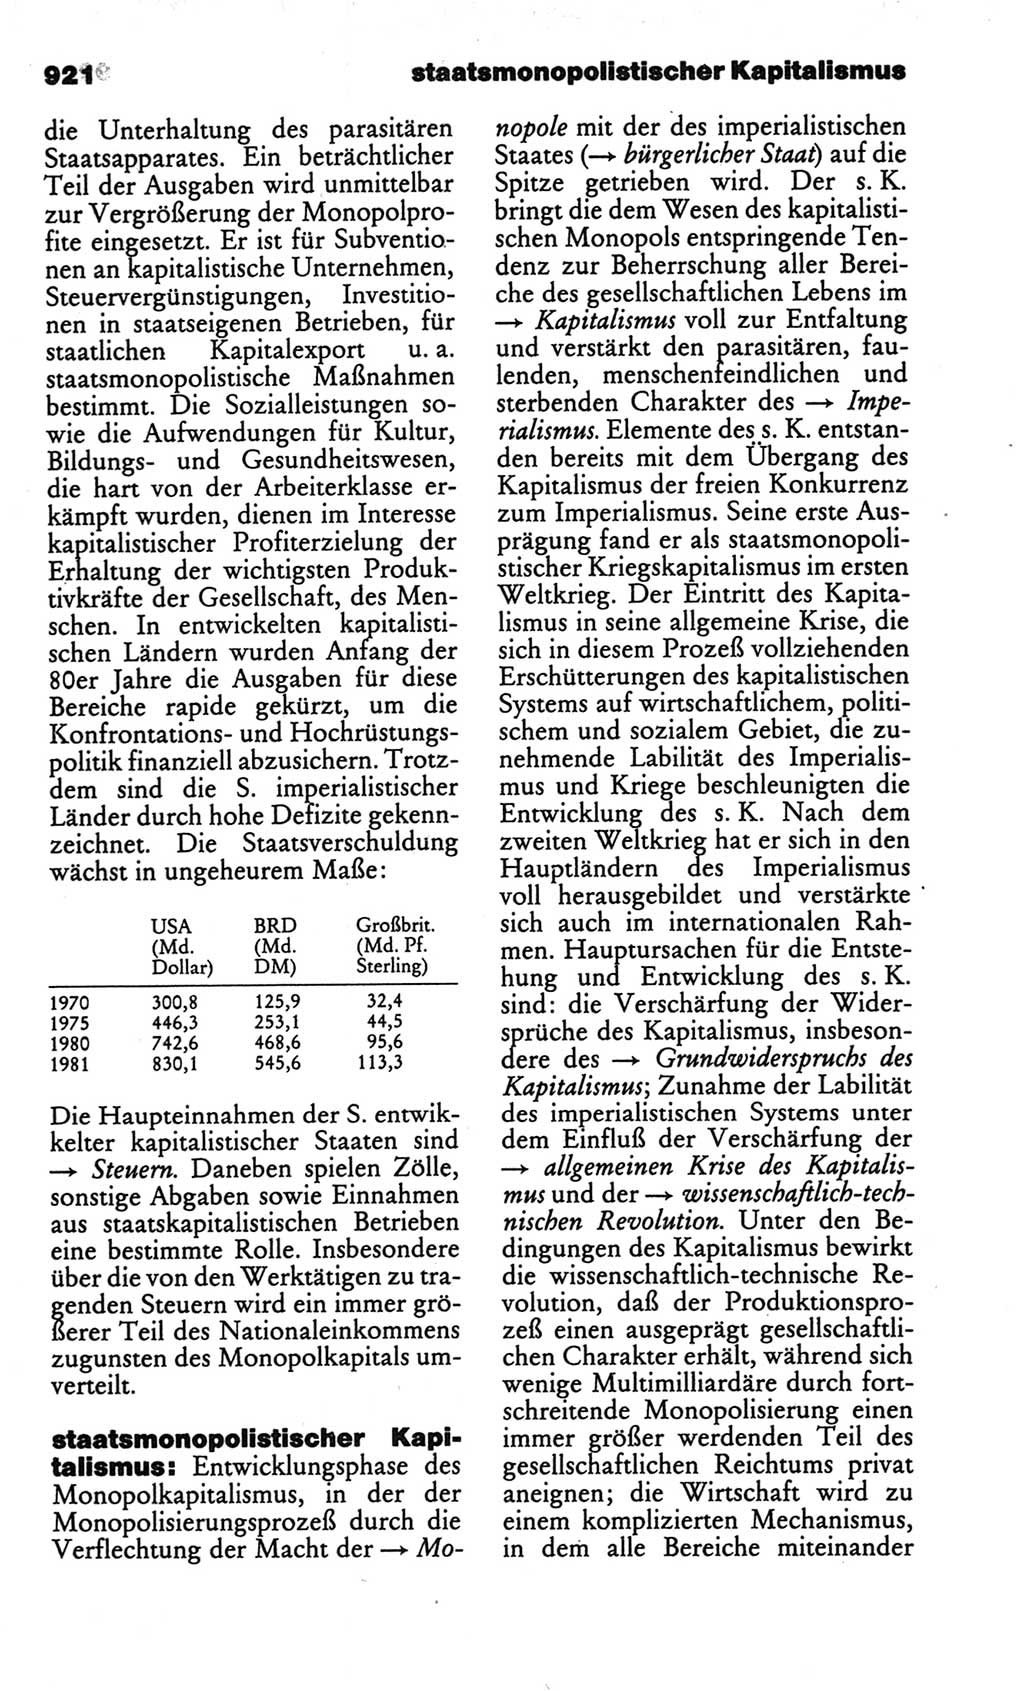 Kleines politisches Wörterbuch [Deutsche Demokratische Republik (DDR)] 1986, Seite 921 (Kl. pol. Wb. DDR 1986, S. 921)